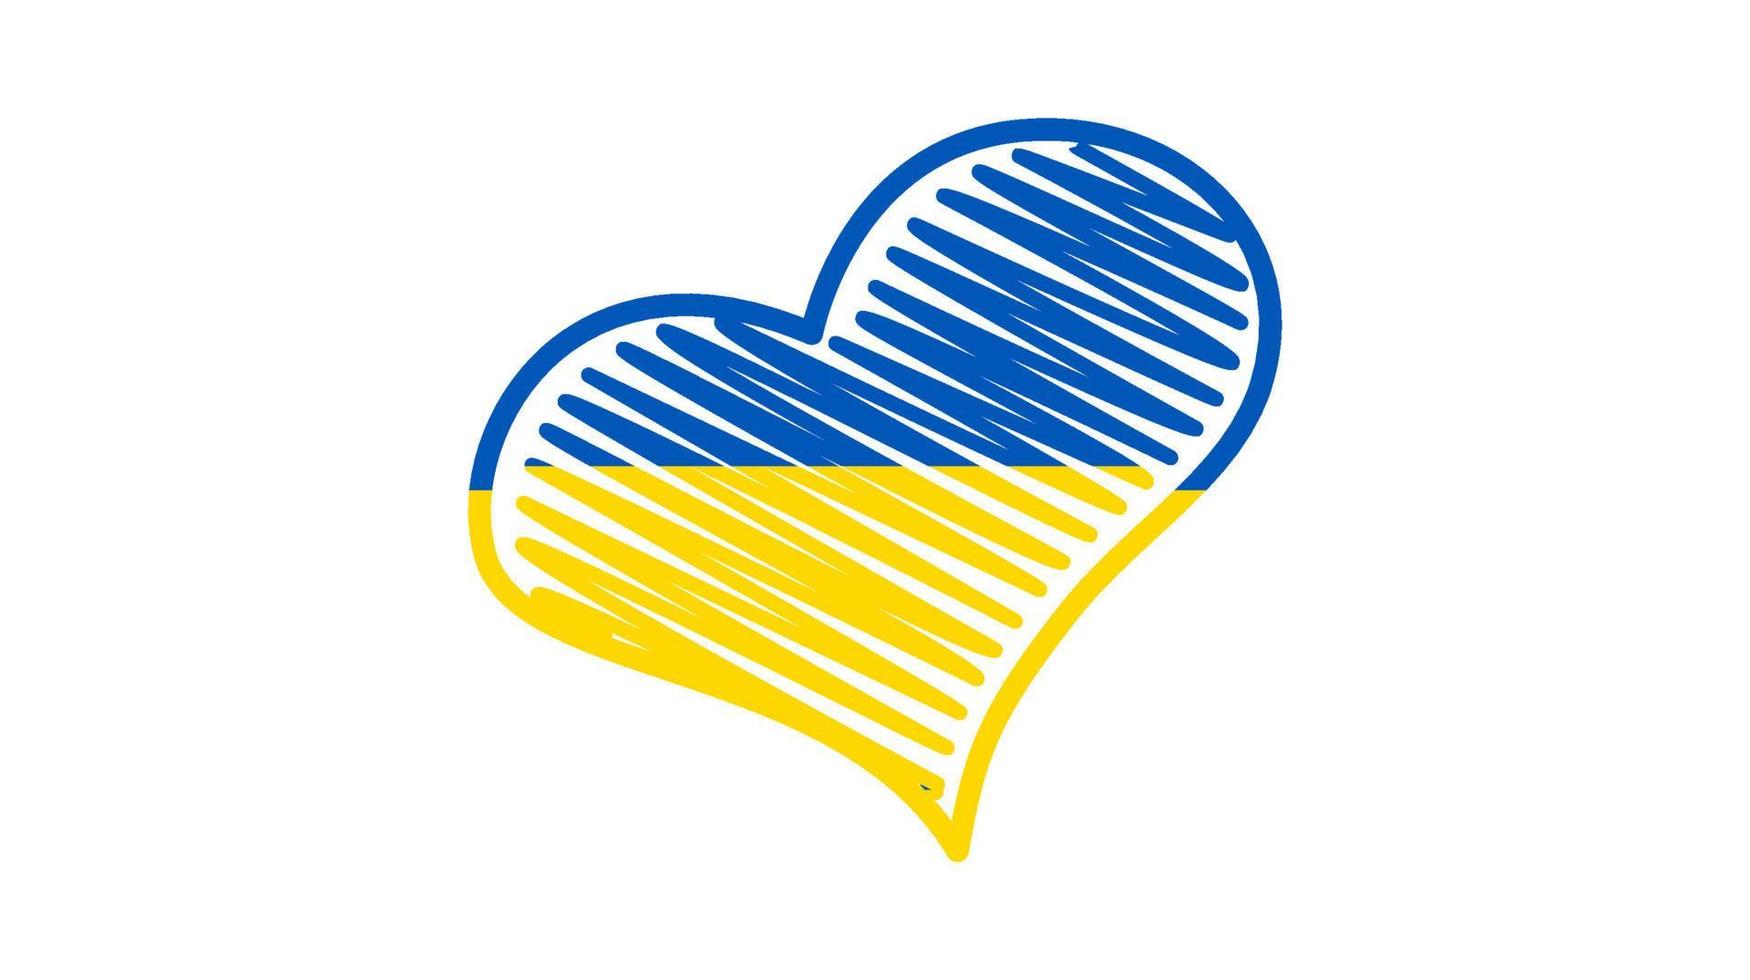 coeur aux couleurs ukrainiennes. coeur de gribouillis jaune et bleu sur fond blanc. illustration vectorielle vecteur